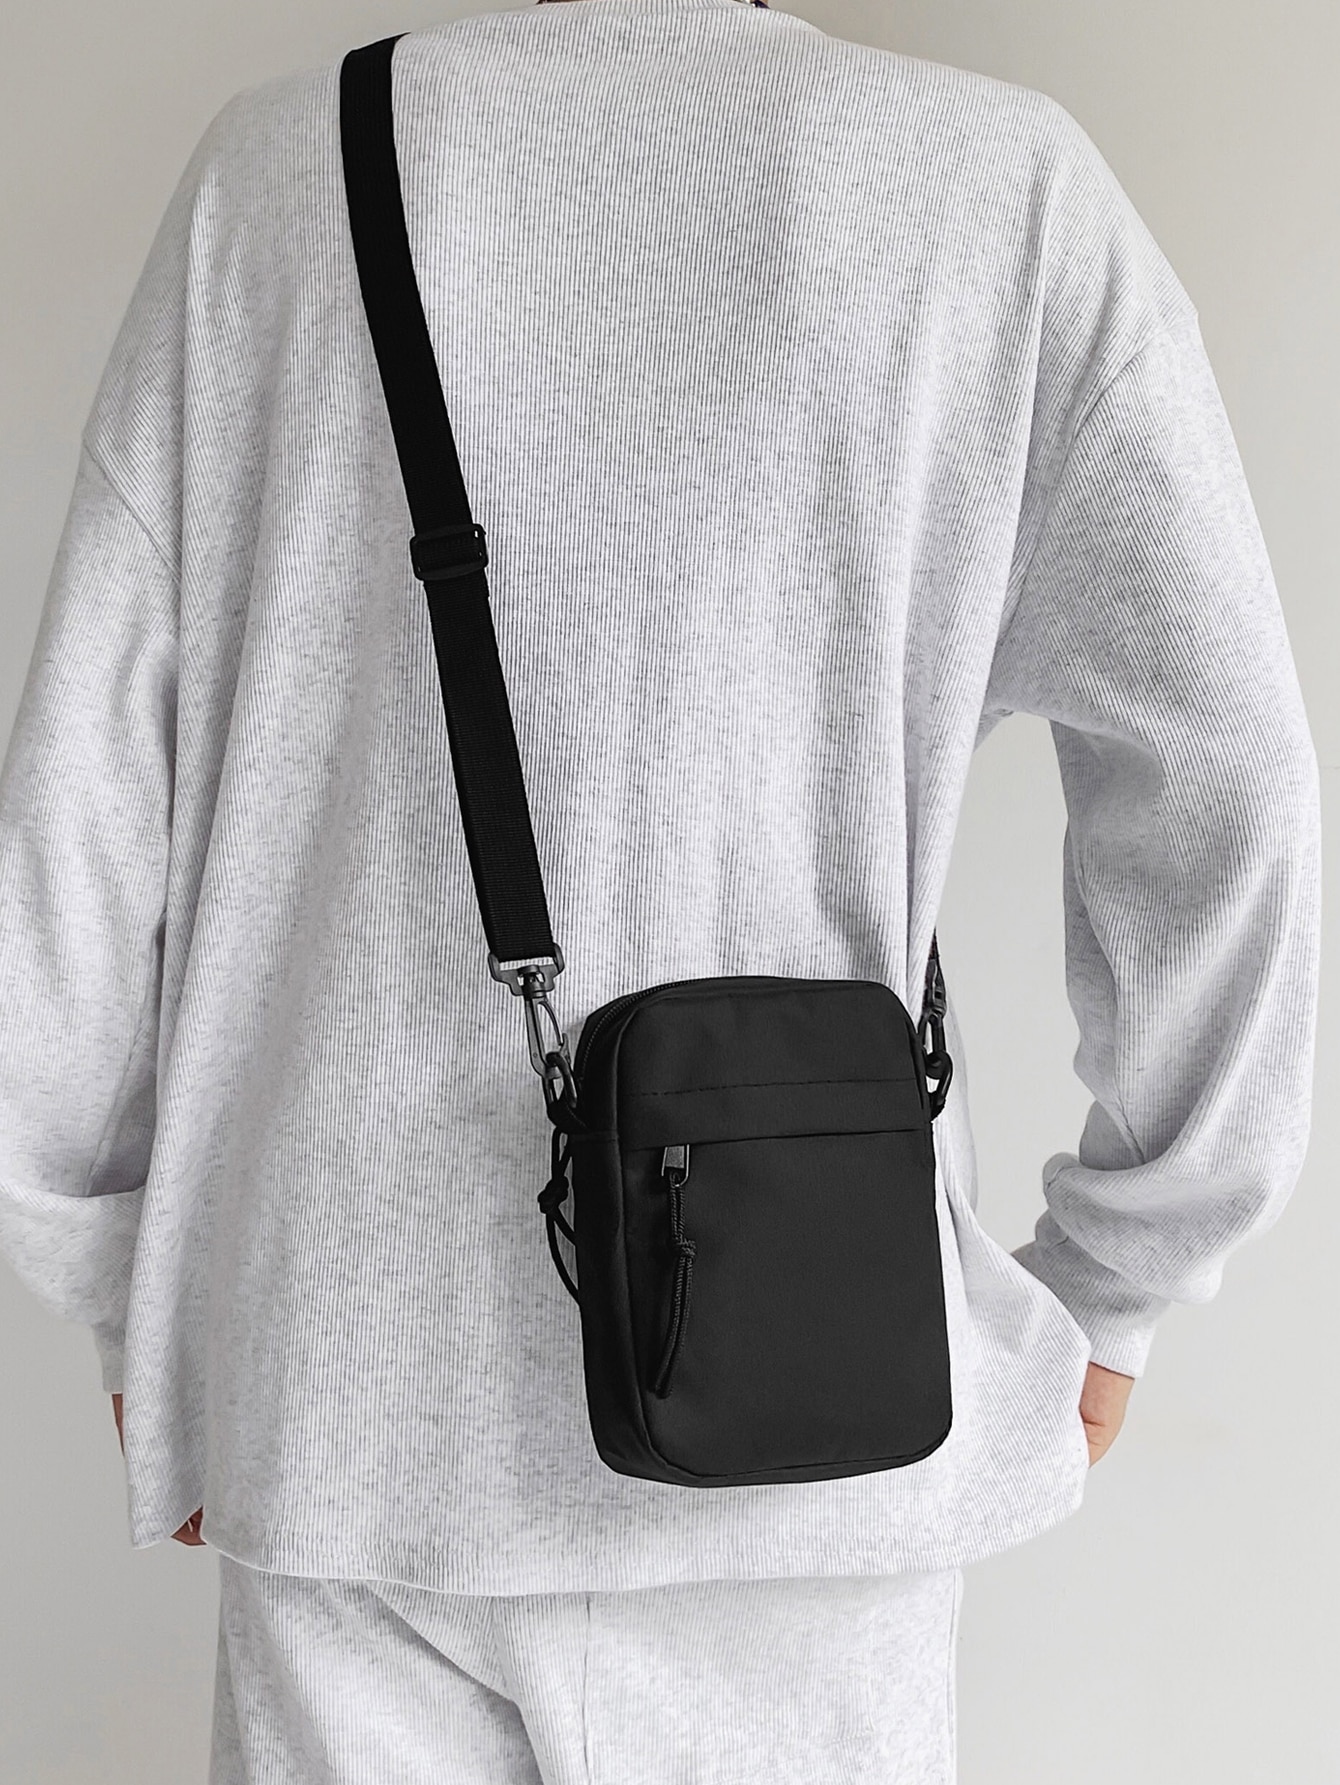 Миниатюрная однотонная износостойкая квадратная сумка через плечо для мужчин и женщин с карманом на молнии, черный